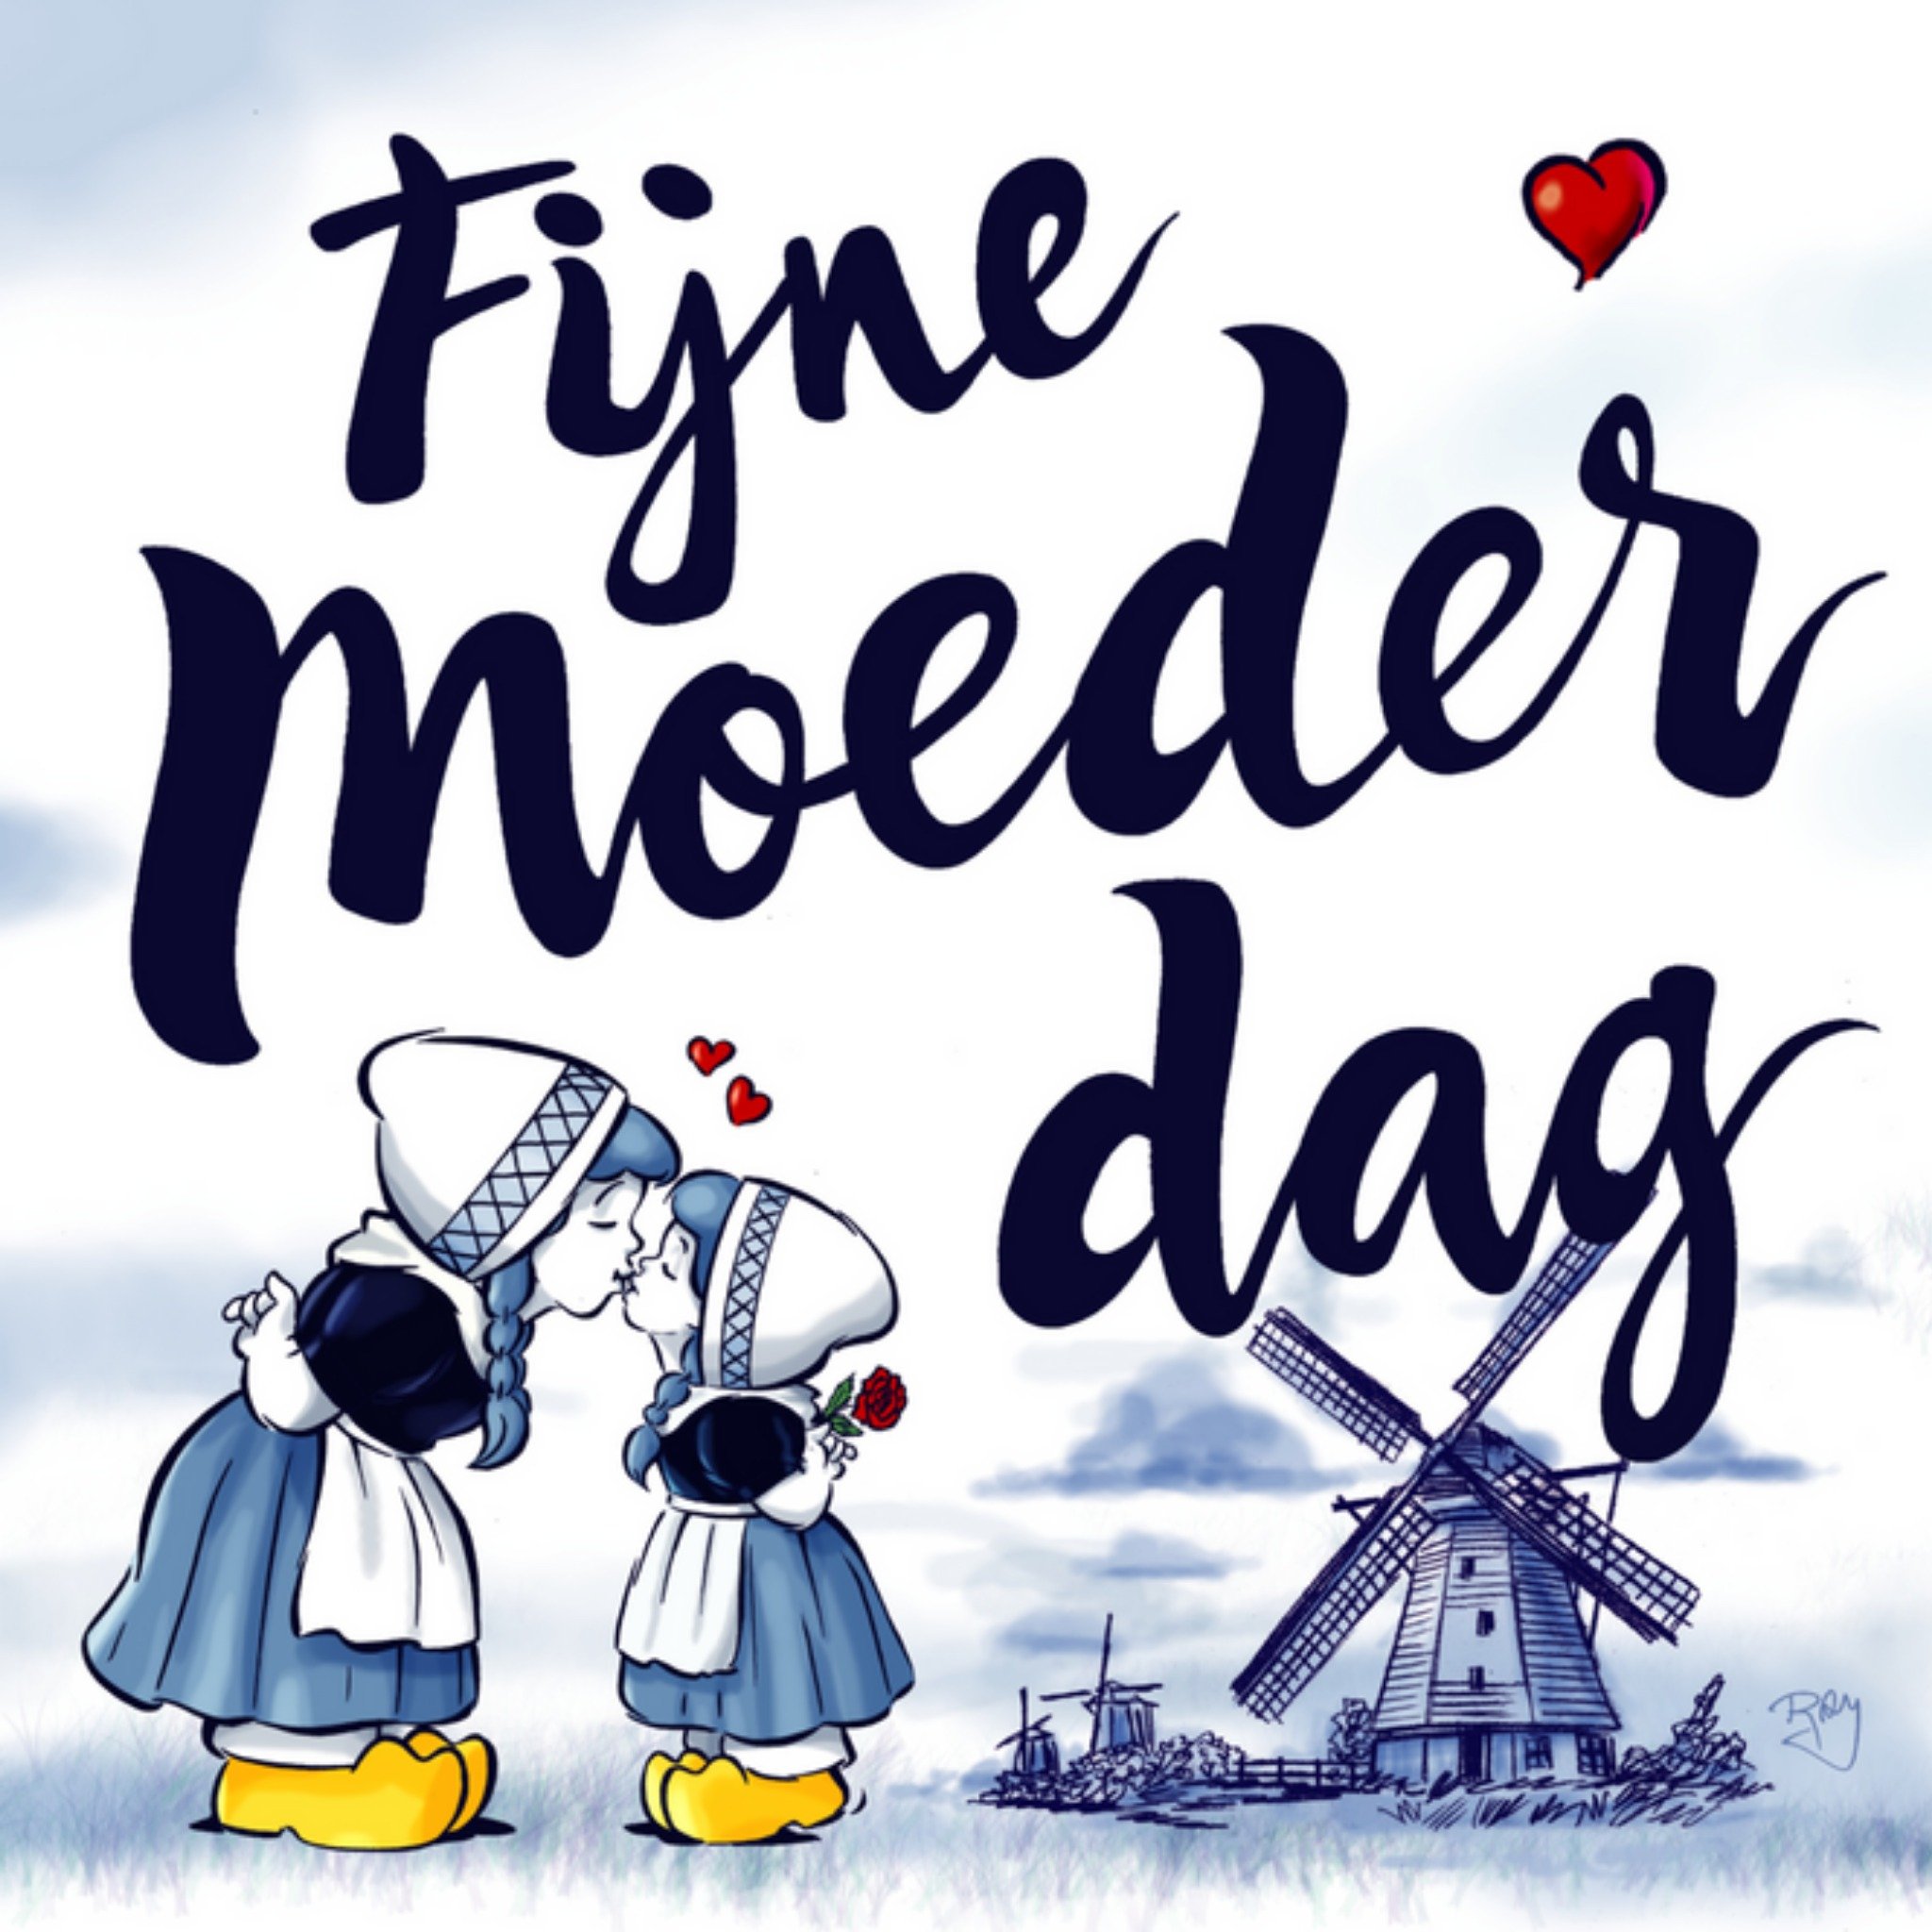 Old Dutch - Moederdagkaart - Fijne moederdag